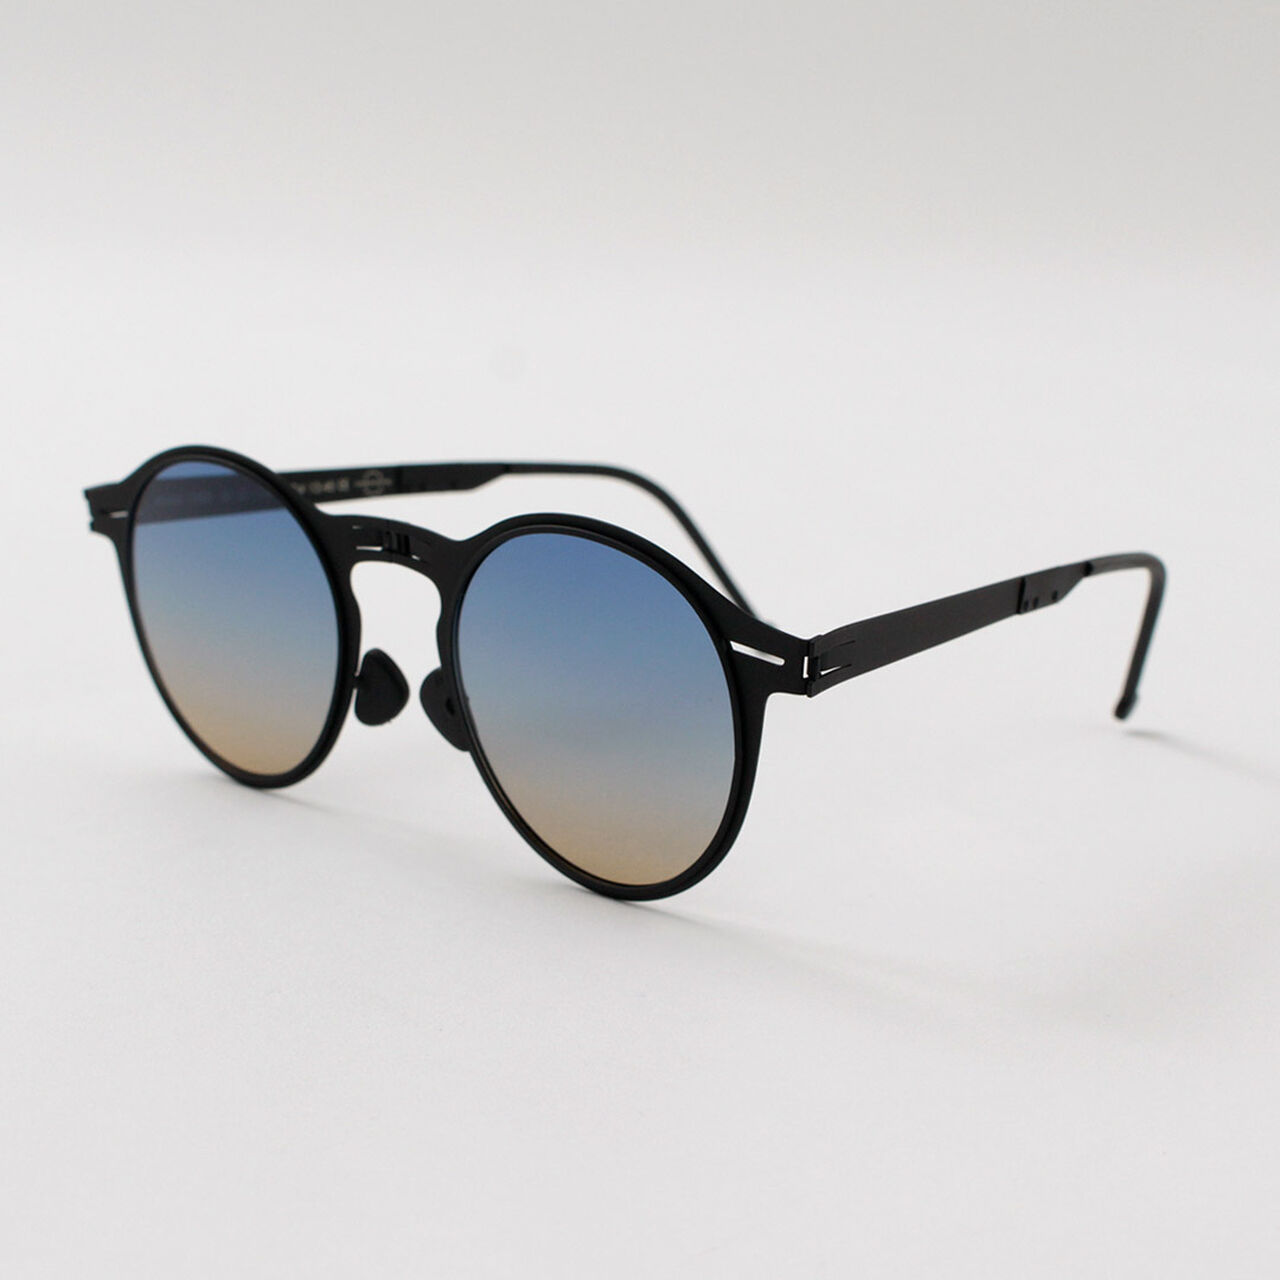 Balto folding sunglasses Boston shape,, large image number 0